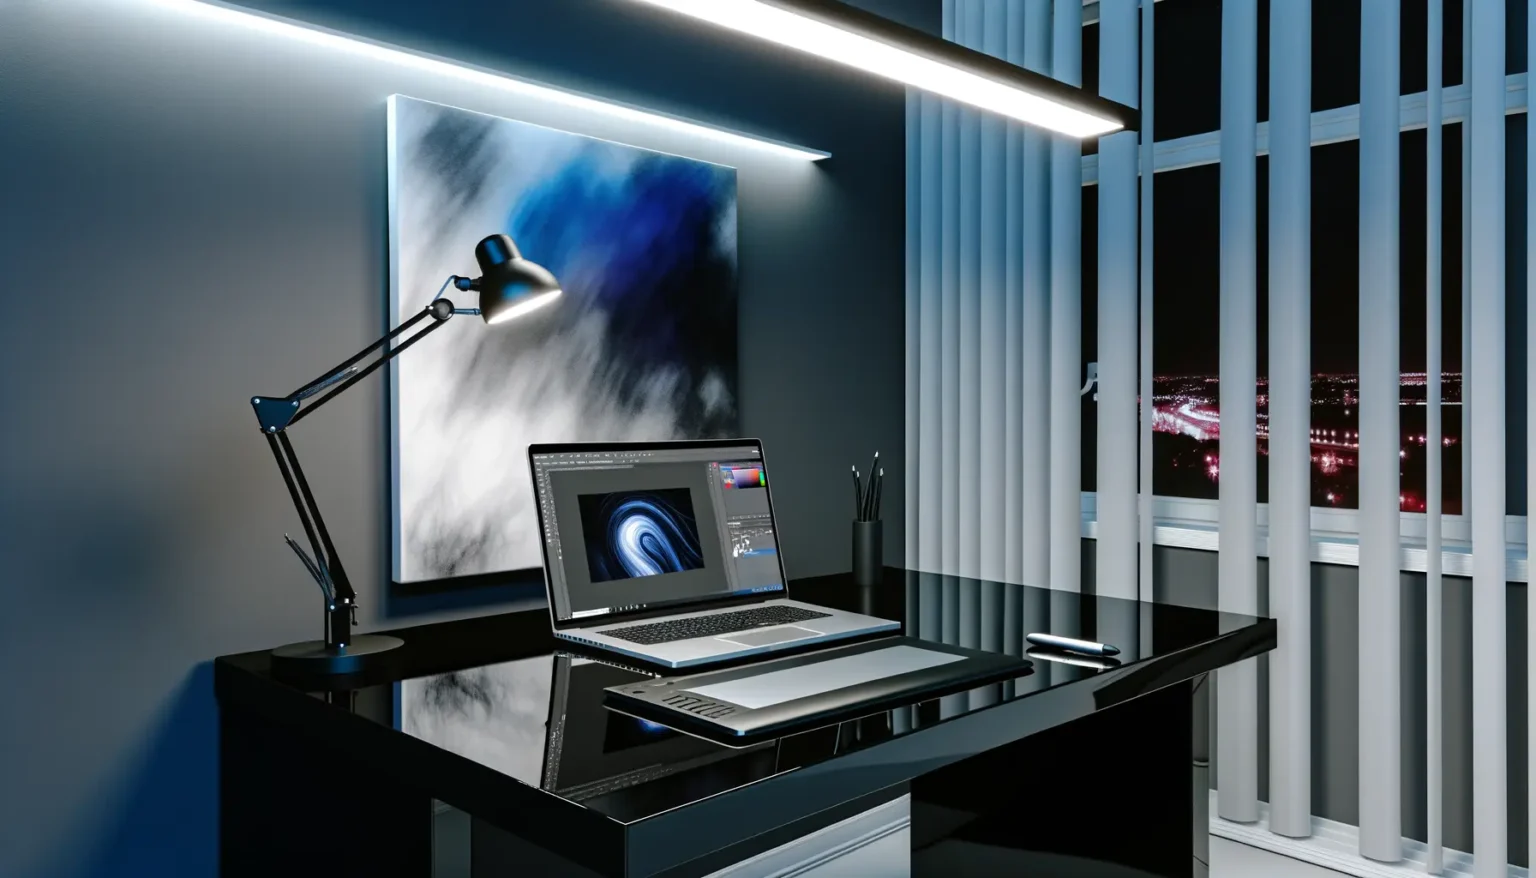 Ein modernes Büro bei Nacht mit einem eleganten schwarzen Schreibtisch, auf dem ein Laptop auf einem Ständer steht, daneben ein Zeichentablett und ein Becher mit Stiften. Eine Schreibtischlampe leuchtet auf die Arbeitsfläche. An der Wand hängt ein abstraktes Gemälde in Blau und Weiß, und durch Fenster mit vertikalen Jalousien blickt man auf eine Stadtlandschaft mit Lichtern.